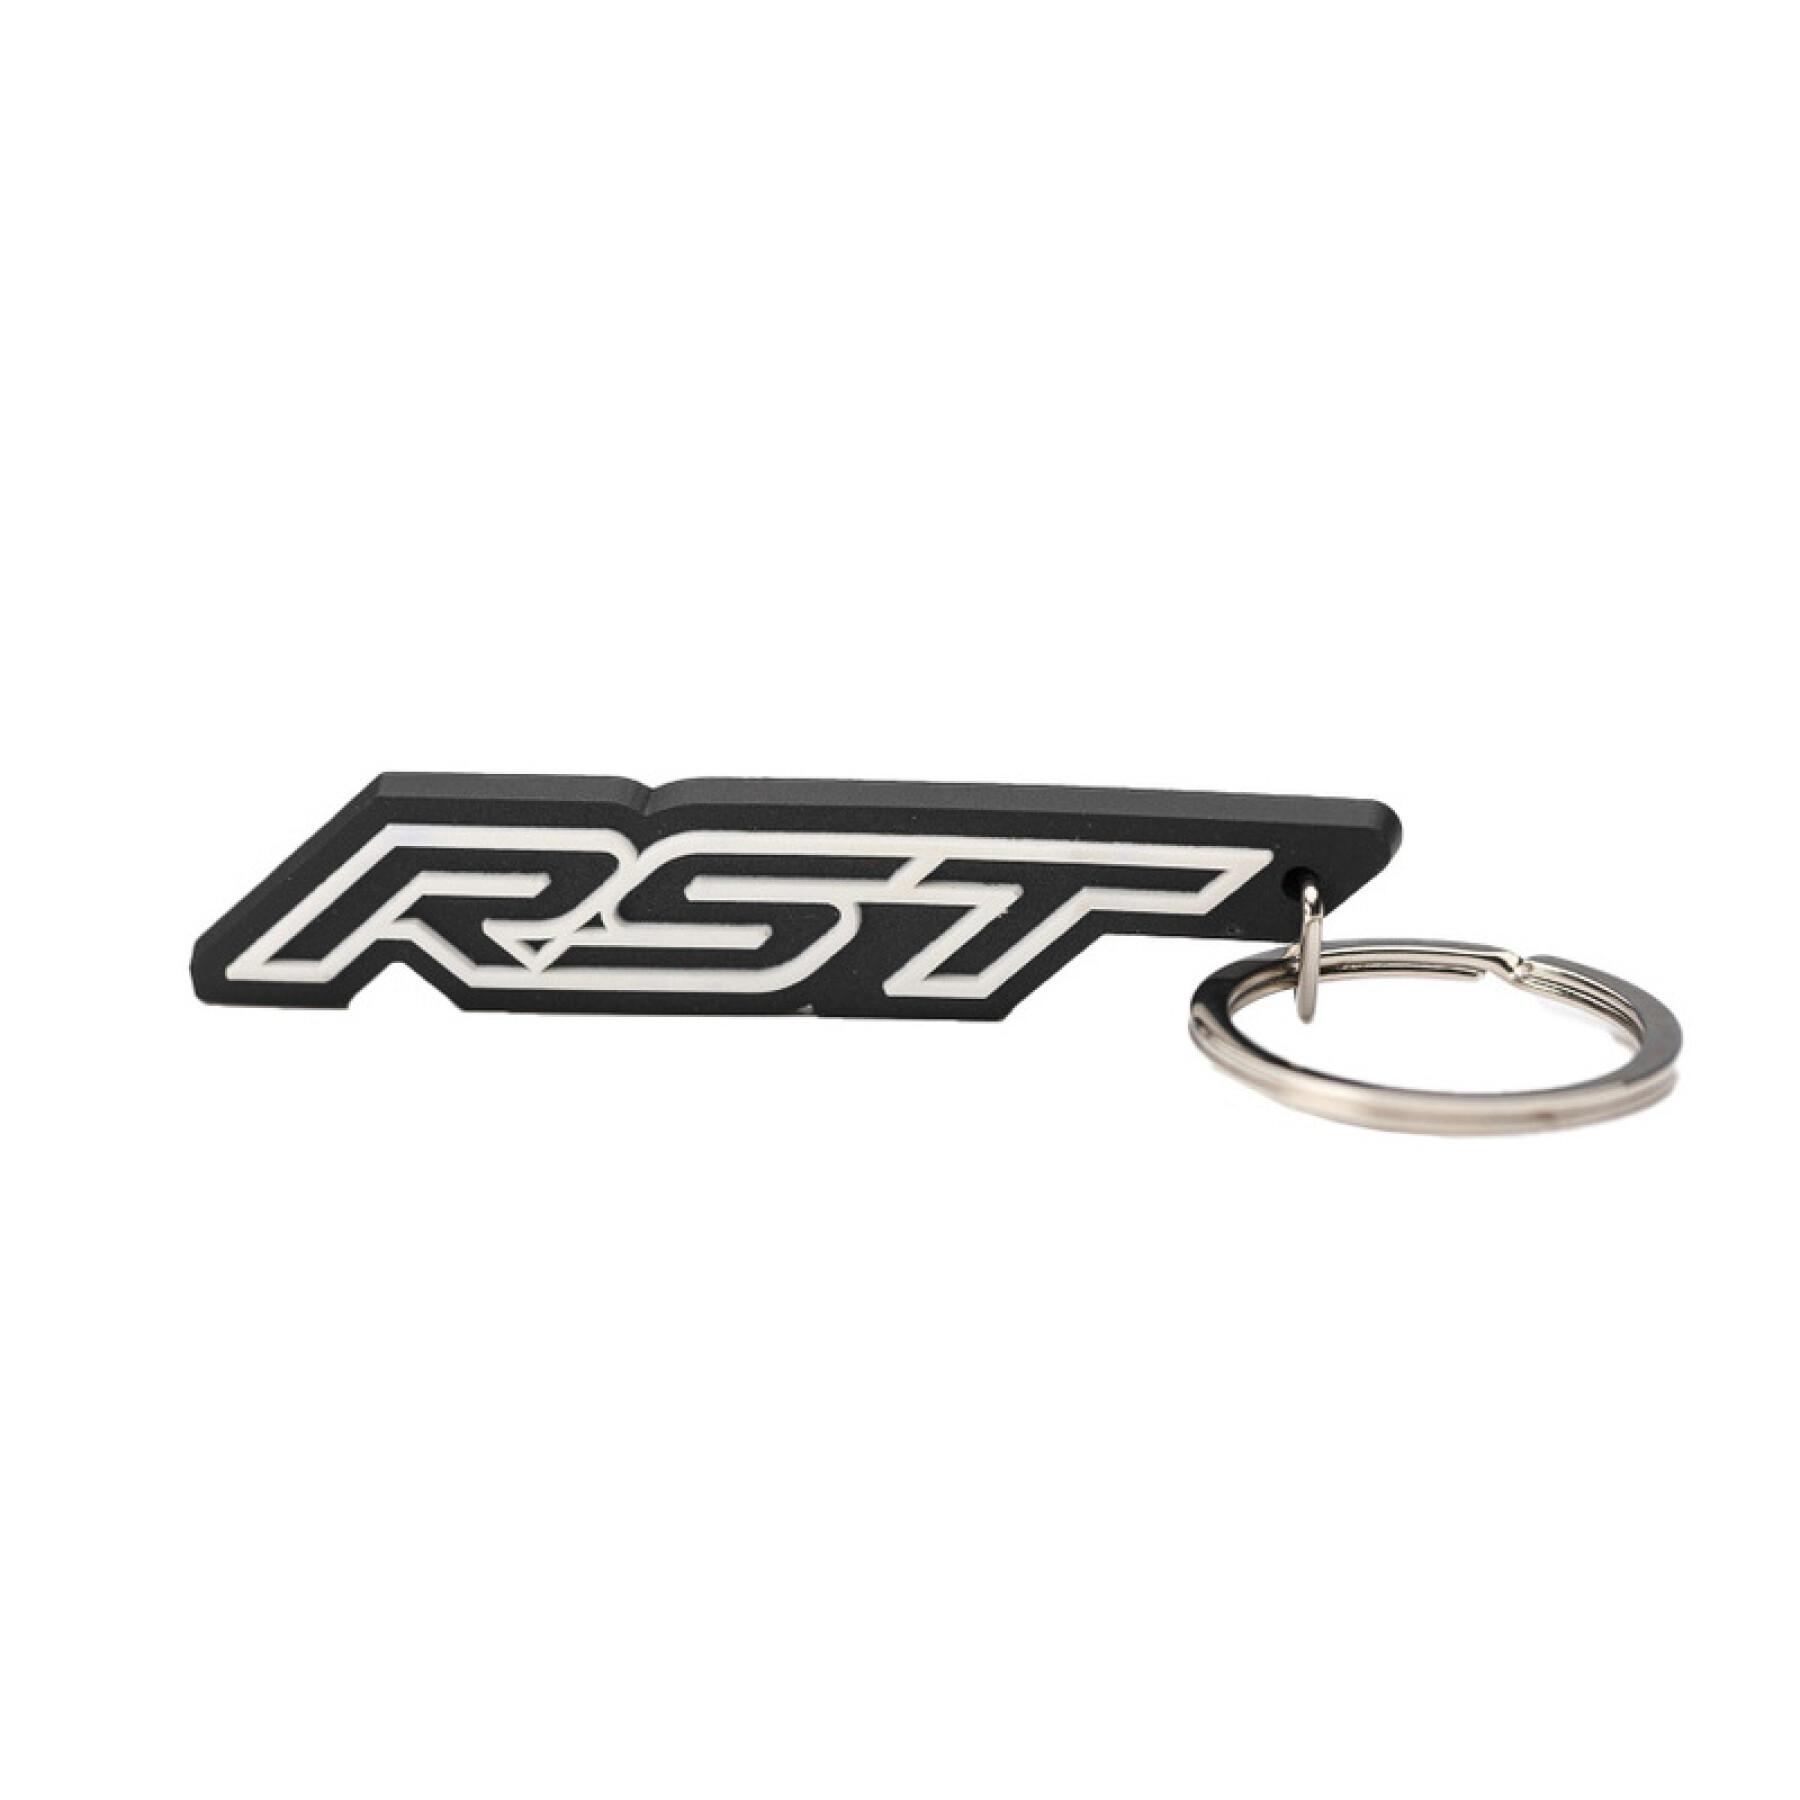 Packung mit 100 Logo-Schlüsselanhängern RST